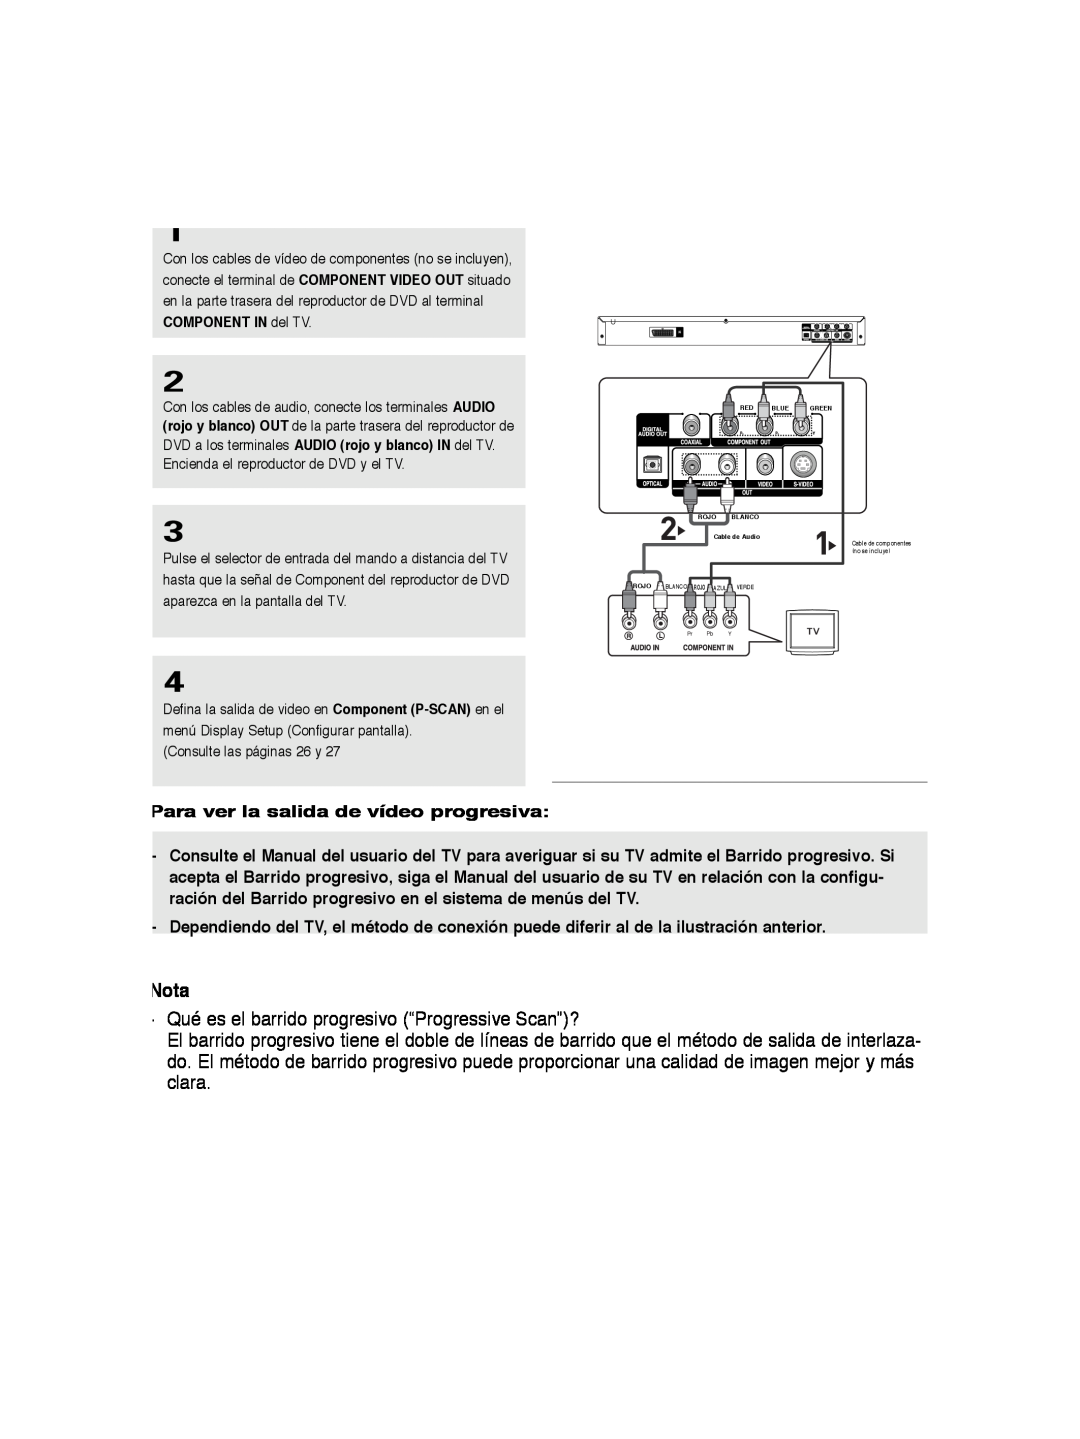 Samsung DVD-P260K/AFR manual Nota, Qué es el barrido progresivo “Progressive Scan”?, Para ver la salida de vídeo progresiva 